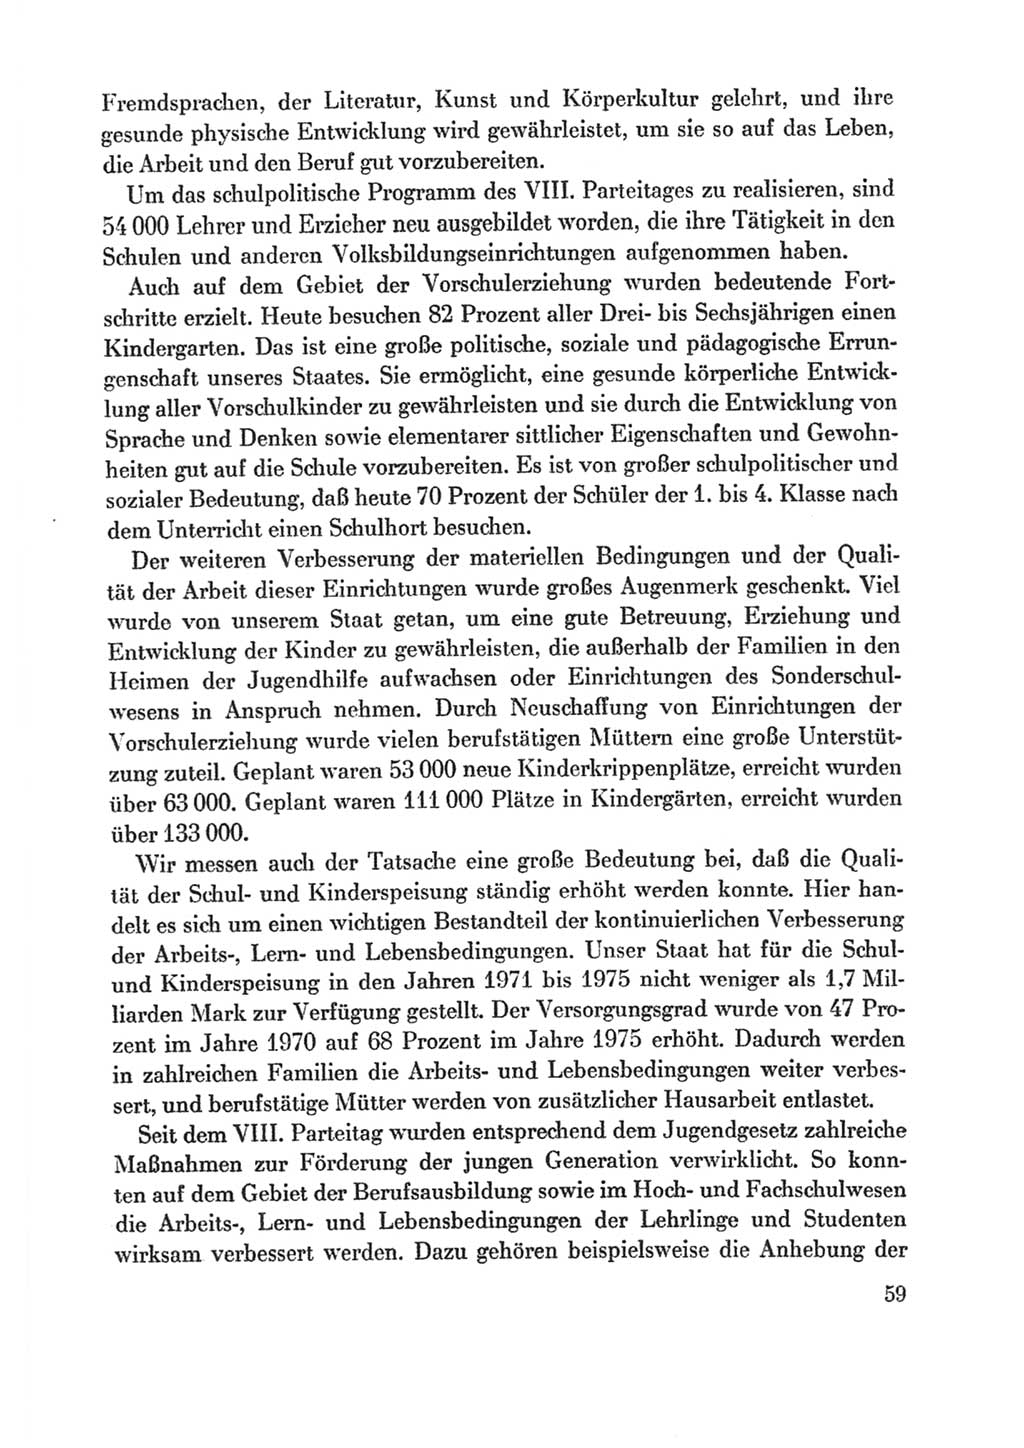 Protokoll der Verhandlungen des Ⅸ. Parteitages der Sozialistischen Einheitspartei Deutschlands (SED) [Deutsche Demokratische Republik (DDR)] 1976, Band 1, Seite 59 (Prot. Verh. Ⅸ. PT SED DDR 1976, Bd. 1, S. 59)